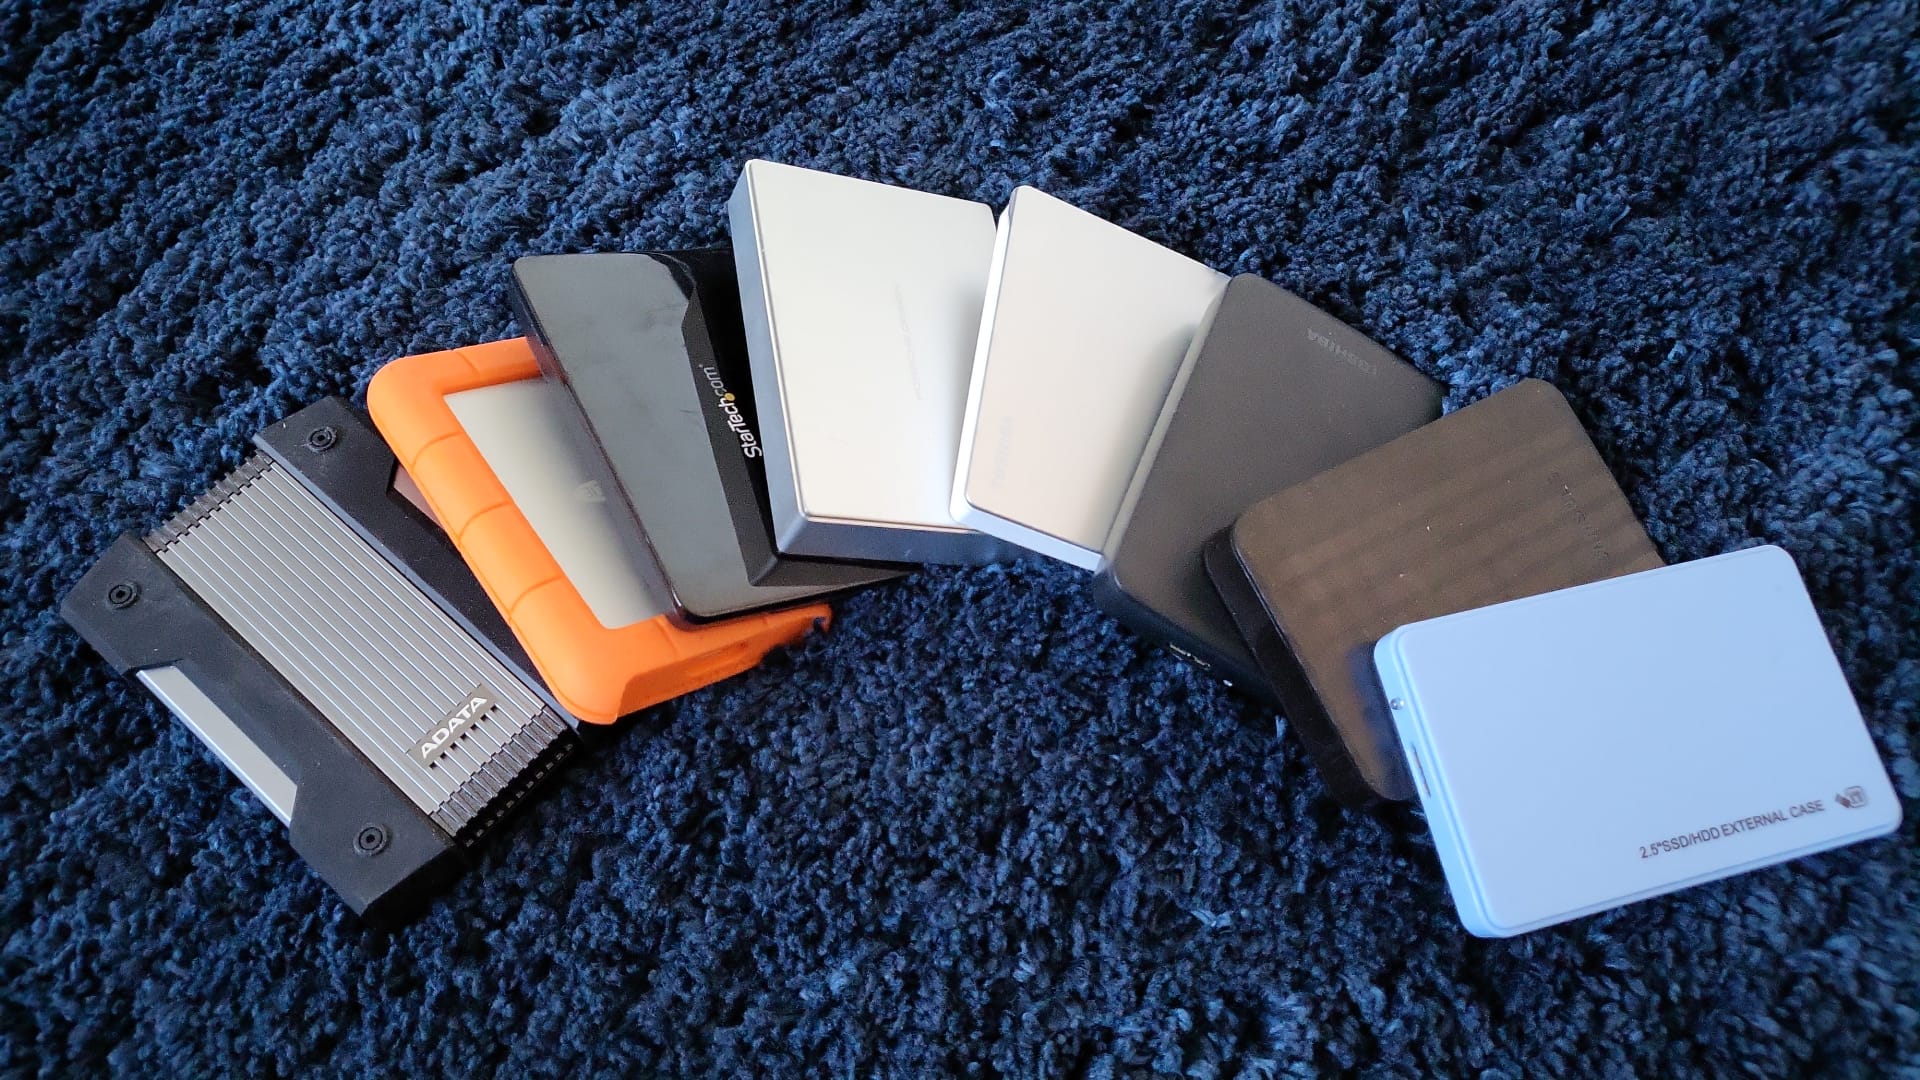 A plethora of hard disk drives